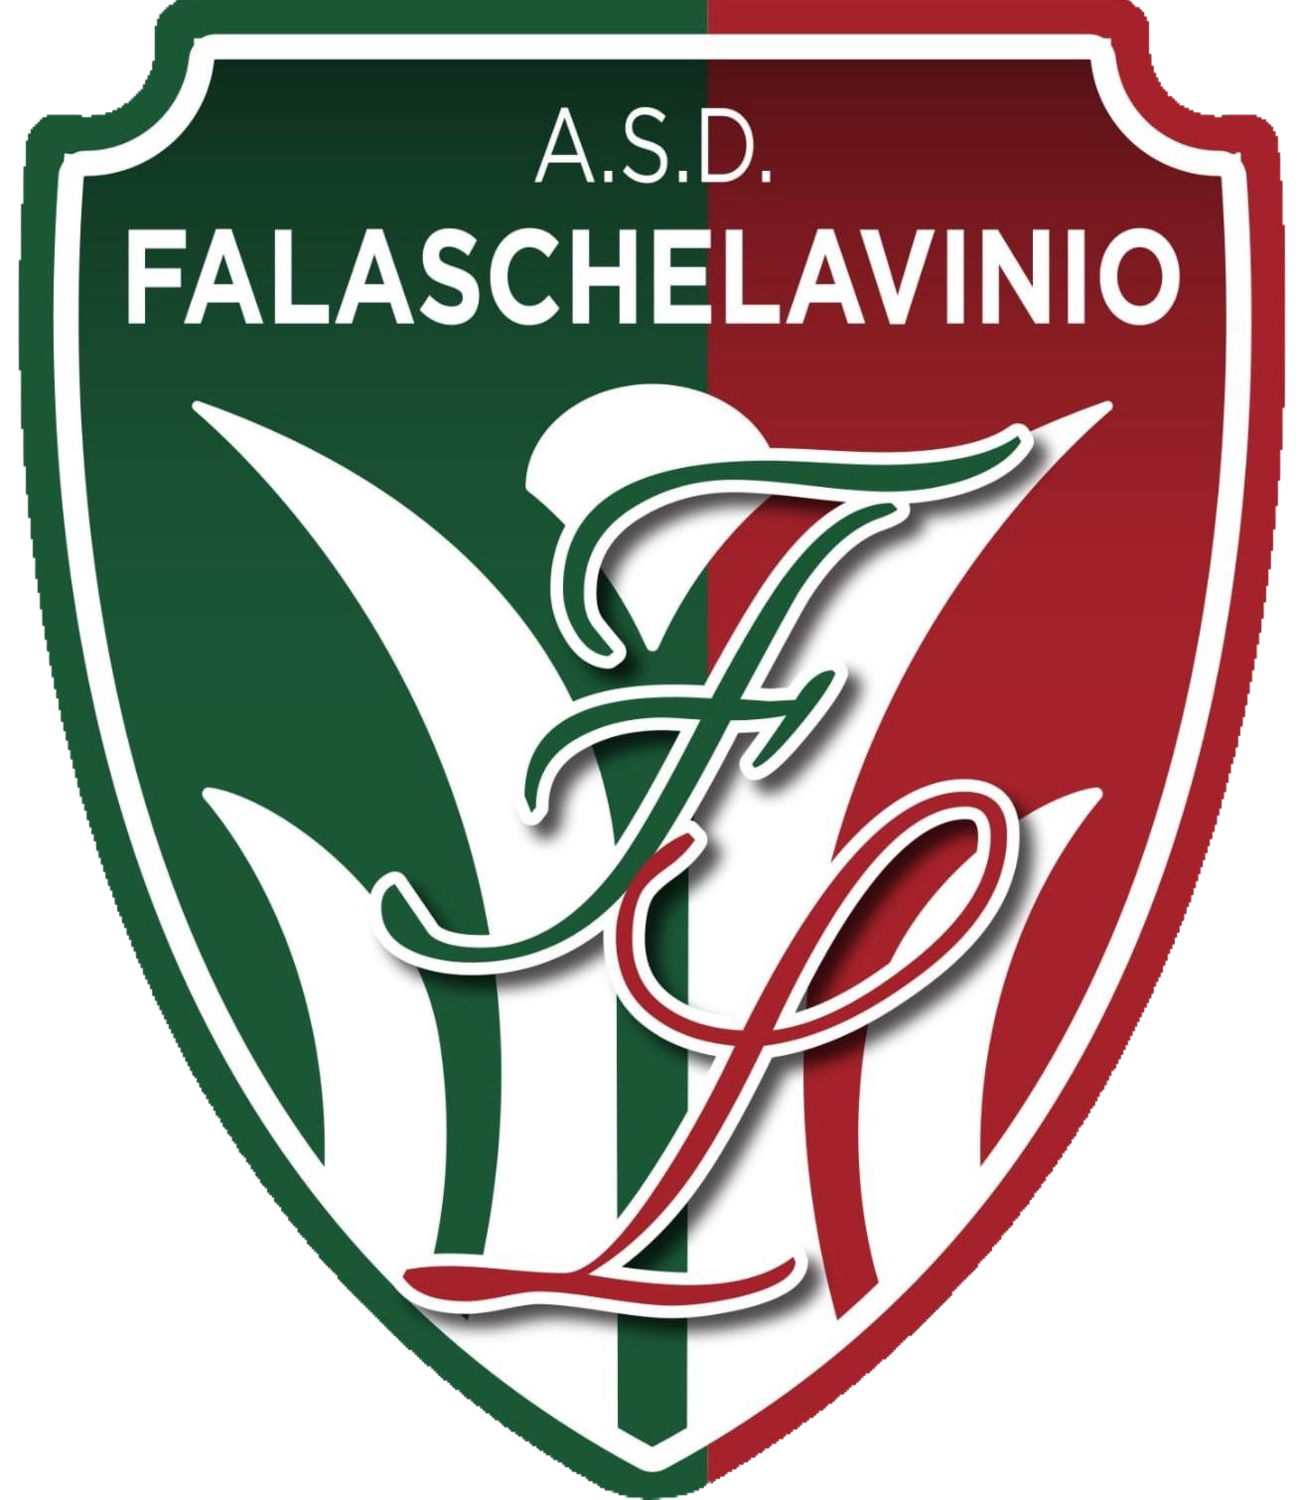 Wappen ASD Falaschelavinio  81730